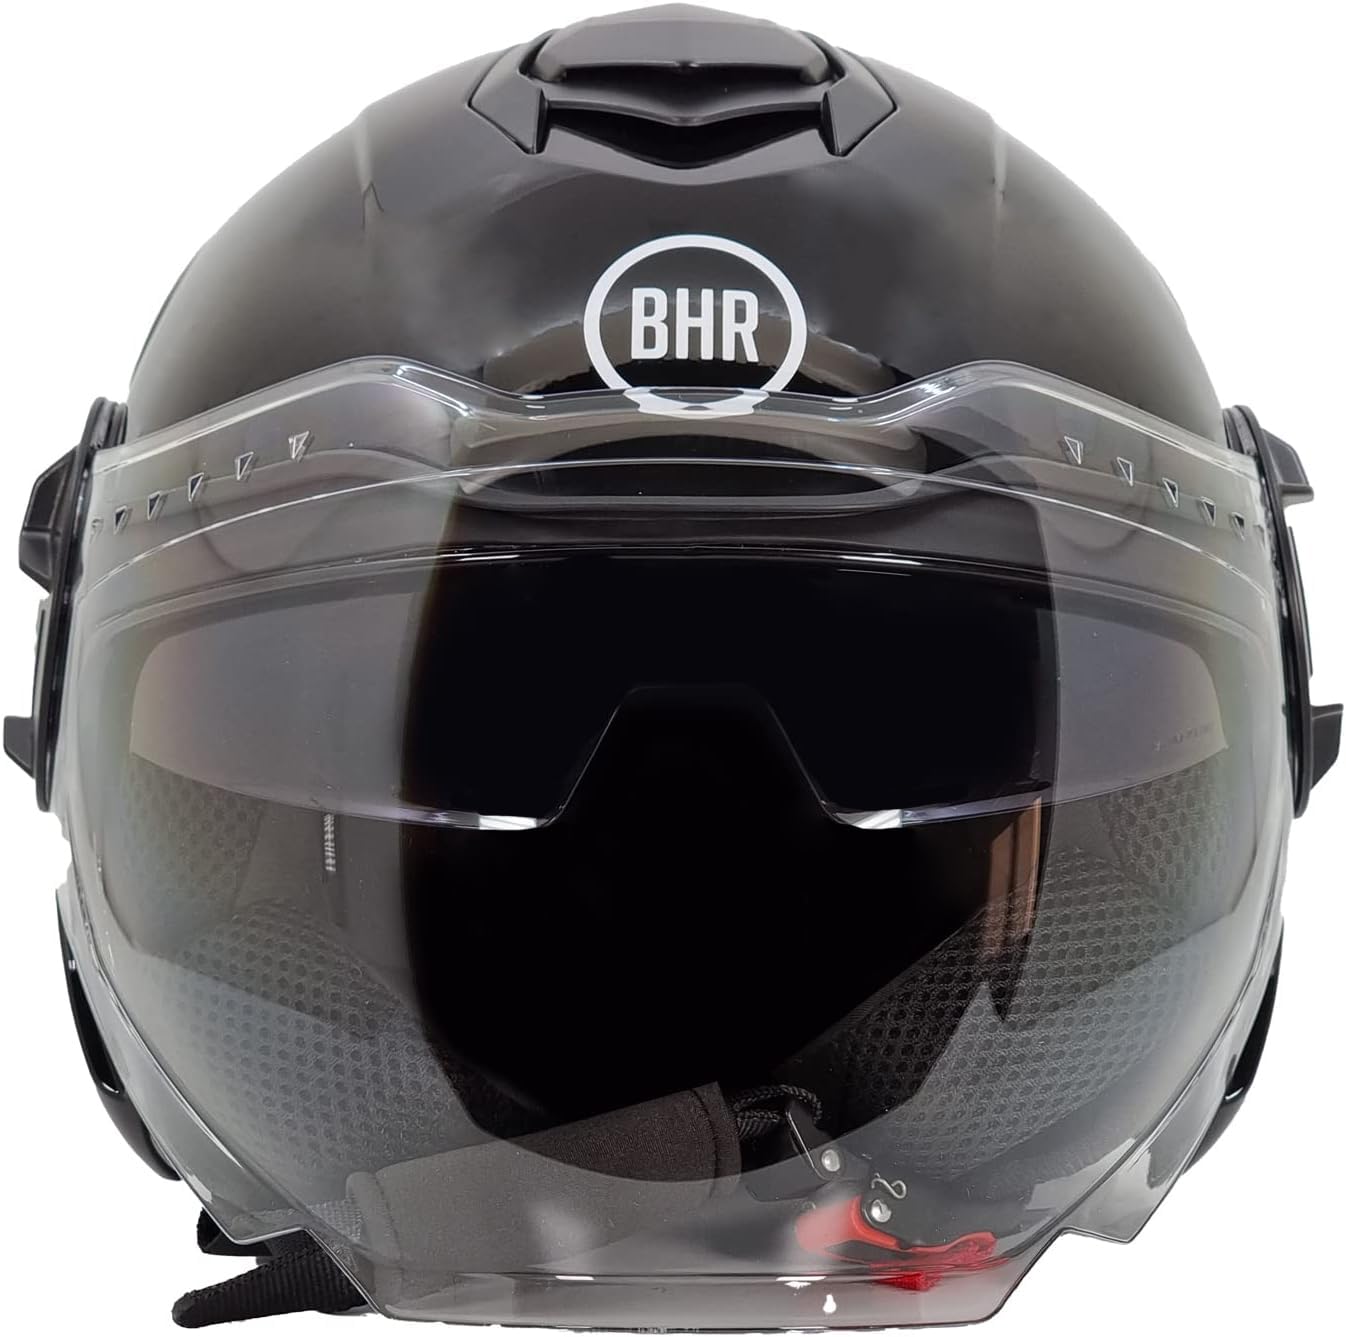 BHR Jet Helm Double Visor 830 FLASH, Scooter Helm mit ECE 22.06 Zulassung, Leichter & komfortabler Jet Helm mit innenliegender Sonnenblende, Metallisch schwarz, XL